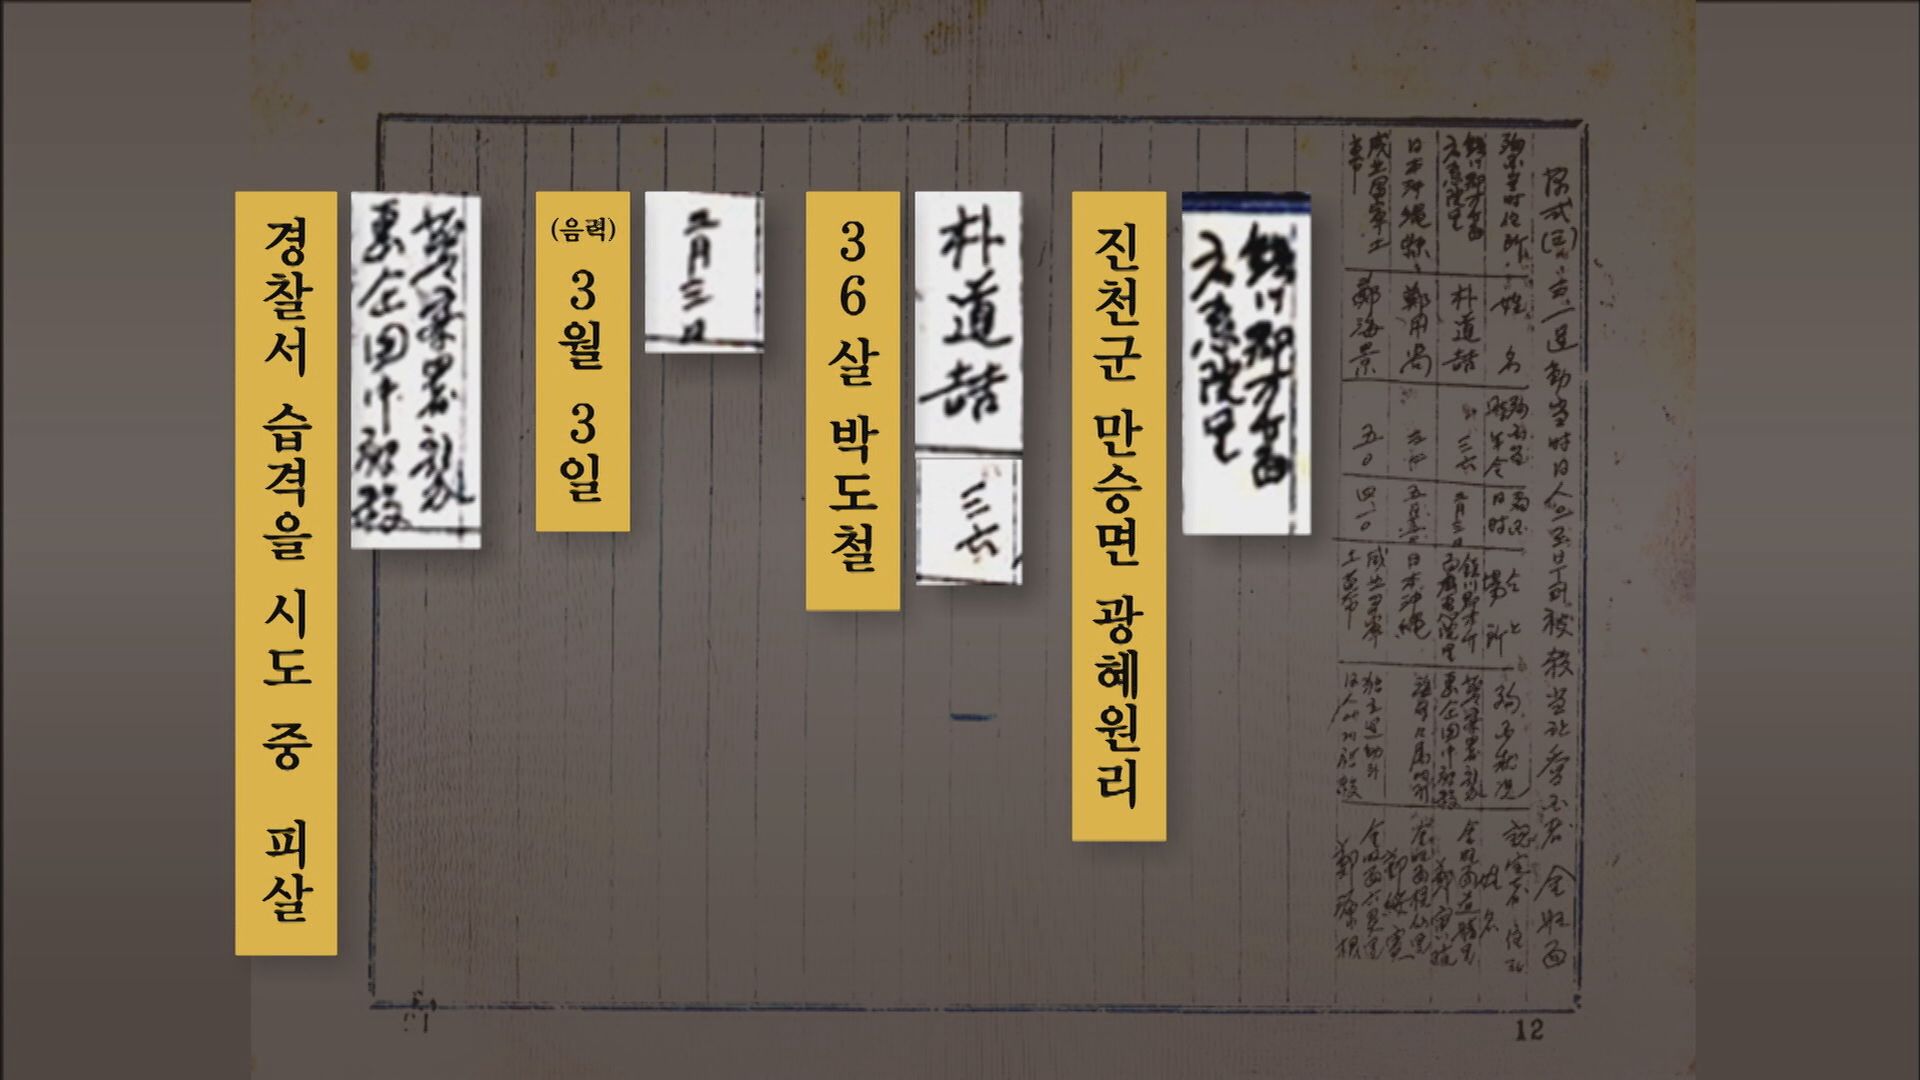  2013년 6월 발굴된 3·1 운동 피살자 명부. 박도철 선생의 독립운동 공적이 담겨있다. 